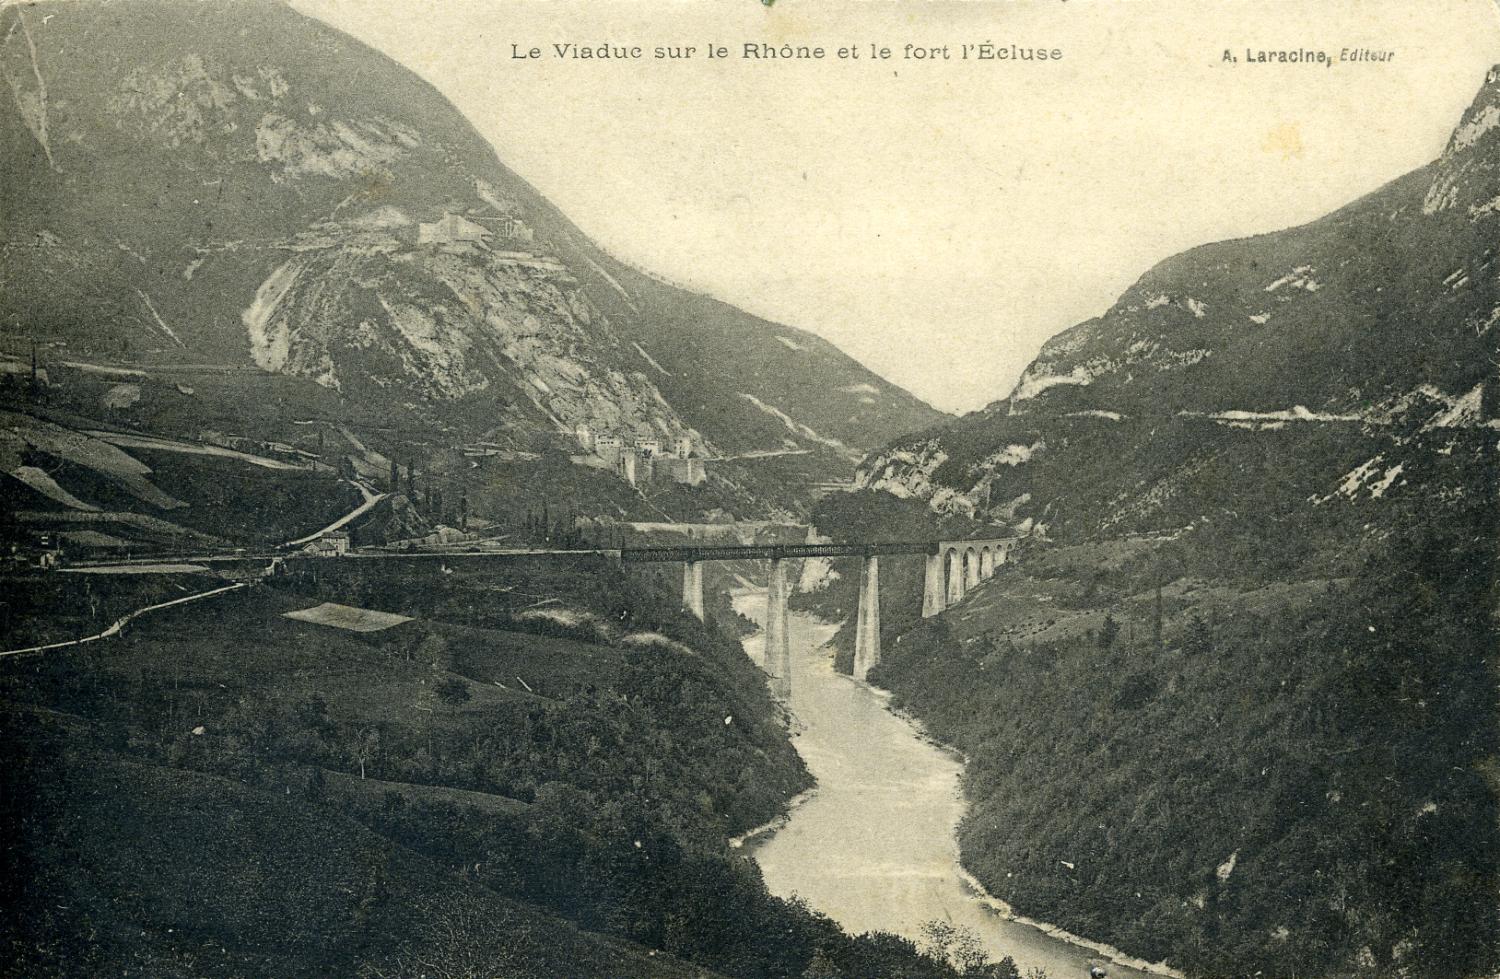 Le Viaduc sur le Rhône et le fort l'Ecluse.